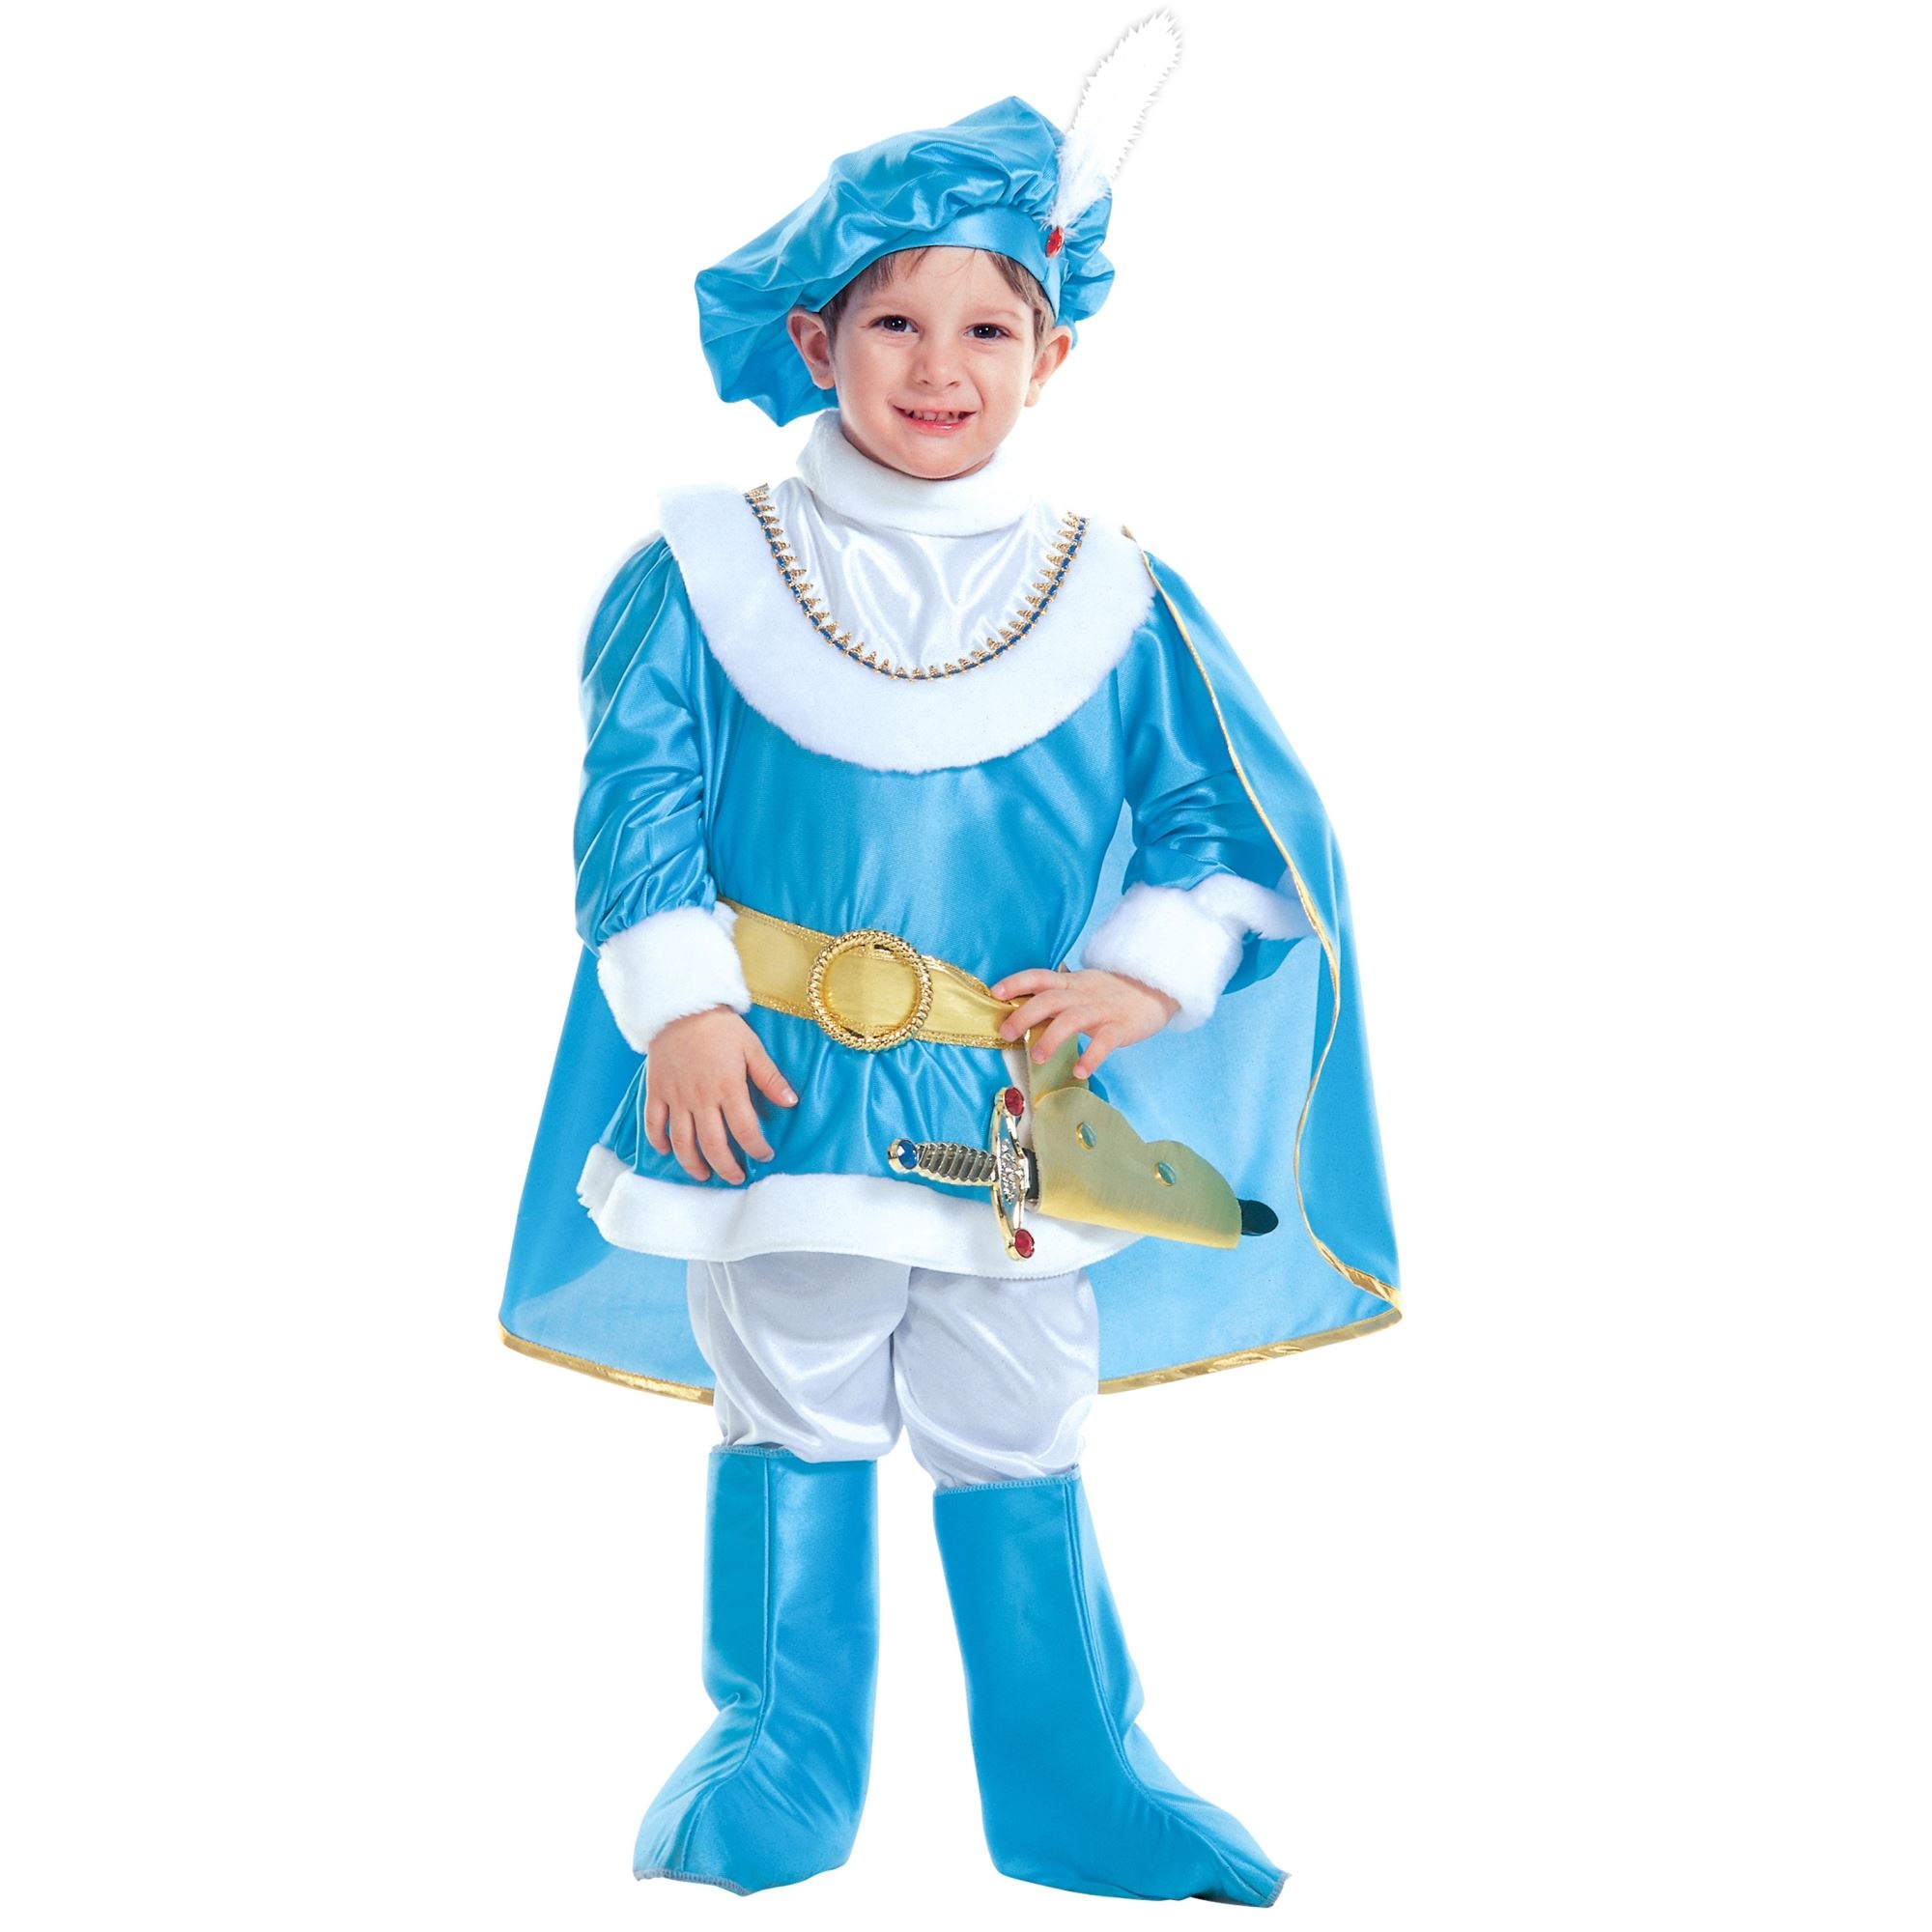 Vervreemding Bestrating schors Blauwe prins Charles pakje kind-110cm - e-Carnavalskleding